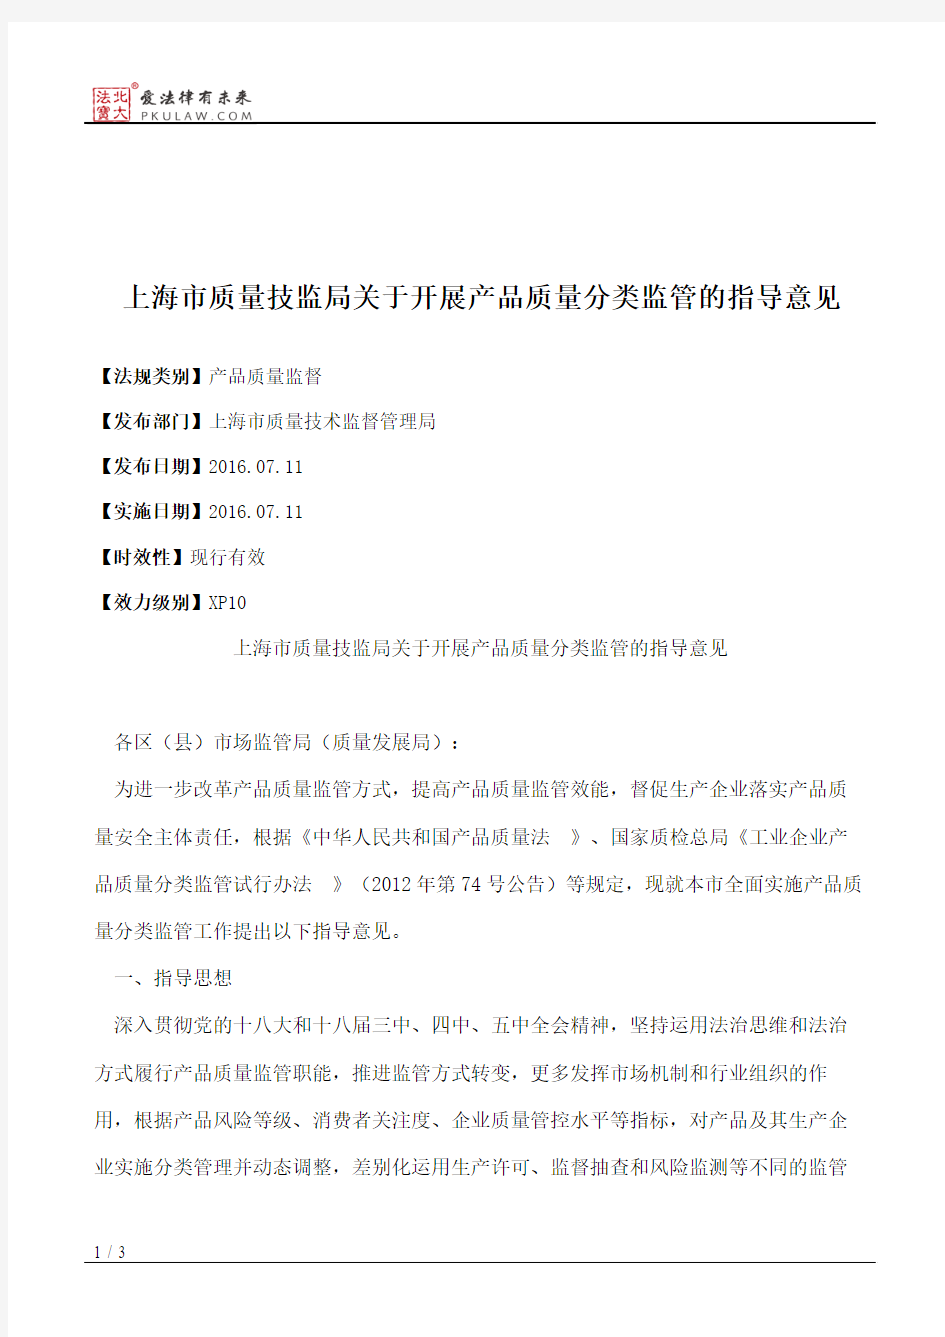 上海市质量技监局关于开展产品质量分类监管的指导意见